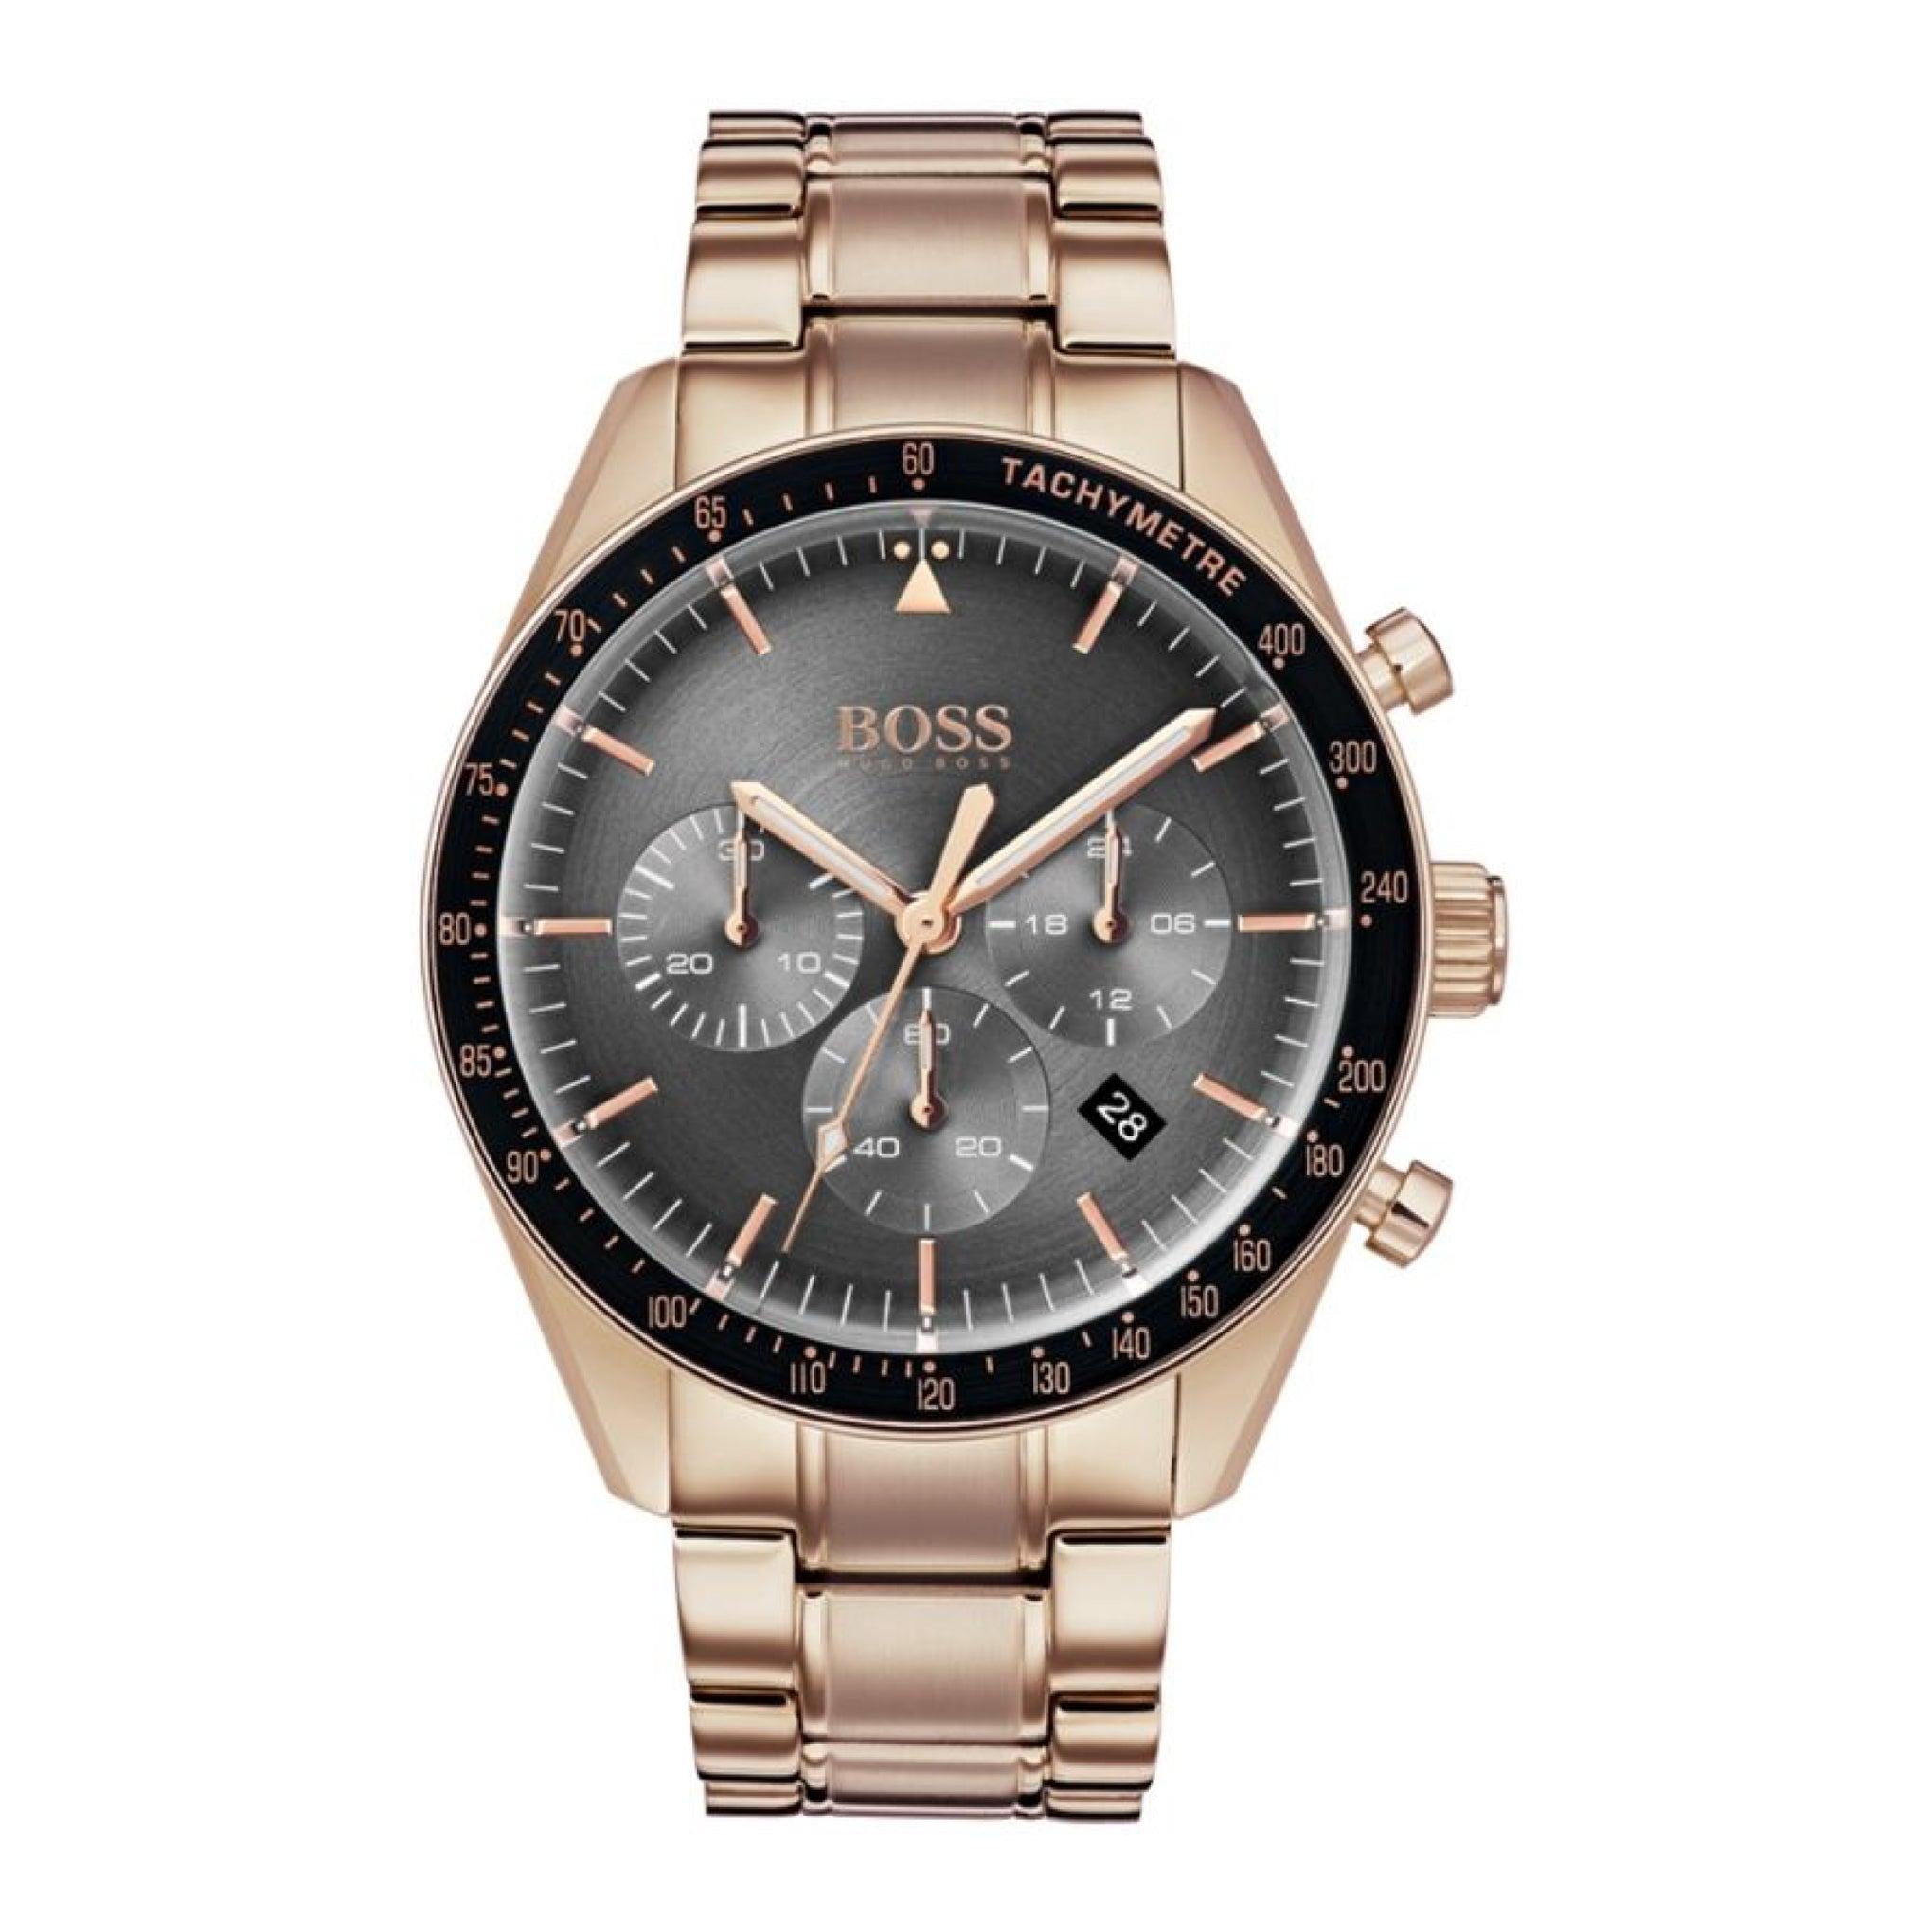 ساعة يد رجالية - ذهبي وردي - بحزام معدني مقاوم للصدأ هوغو بوس Hugo Boss Men's Trophy Chronograph Stainless Steel Band Watch